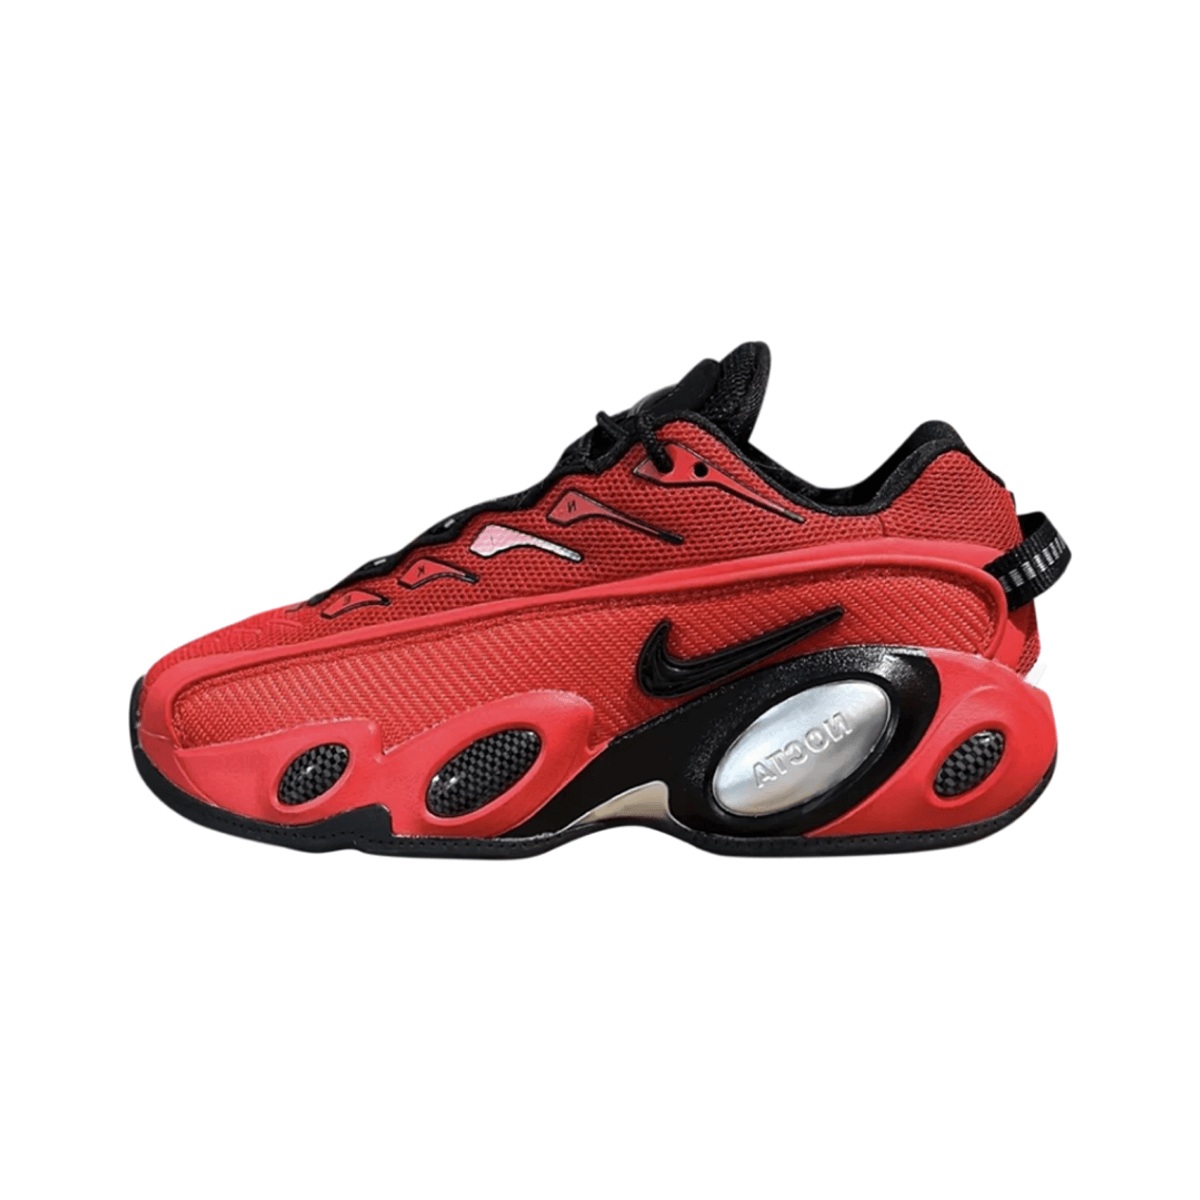 NOCTA x Nike Glide Bright Crimson